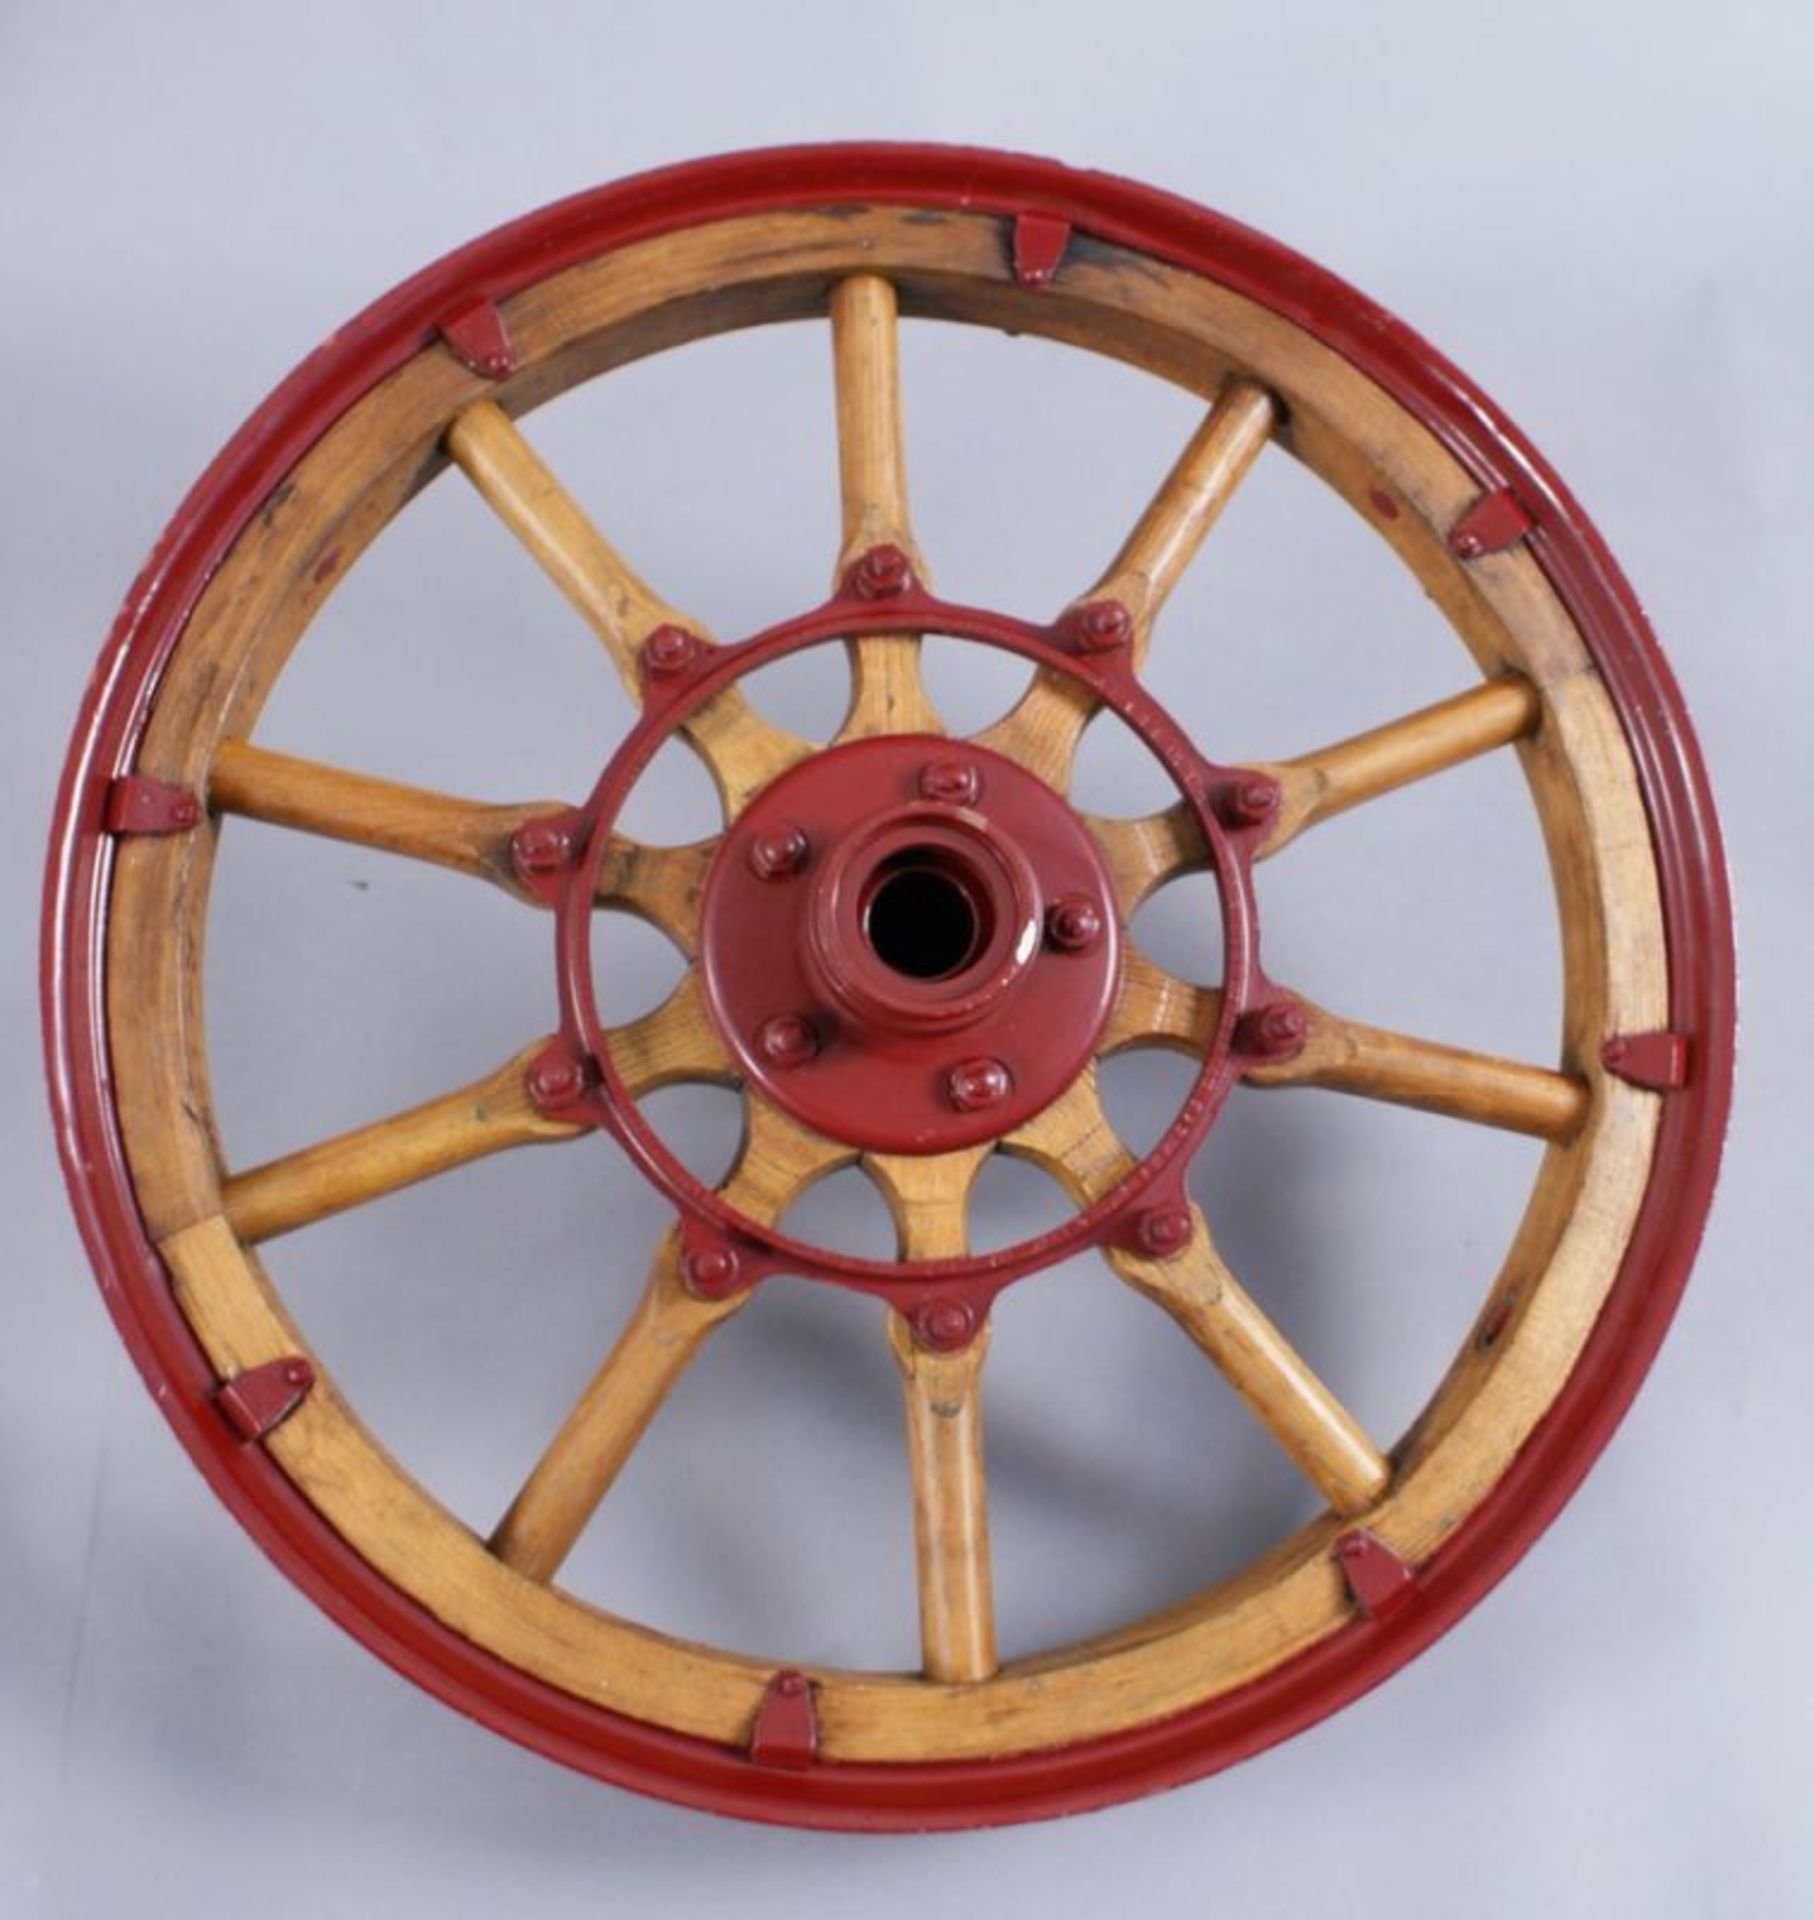 ZWEI ALTE AUTORÄDER Oldtimerfelgen aus Metall mit Holz, rot lackiert, wohl 20er/30er Jahre, - Bild 6 aus 7